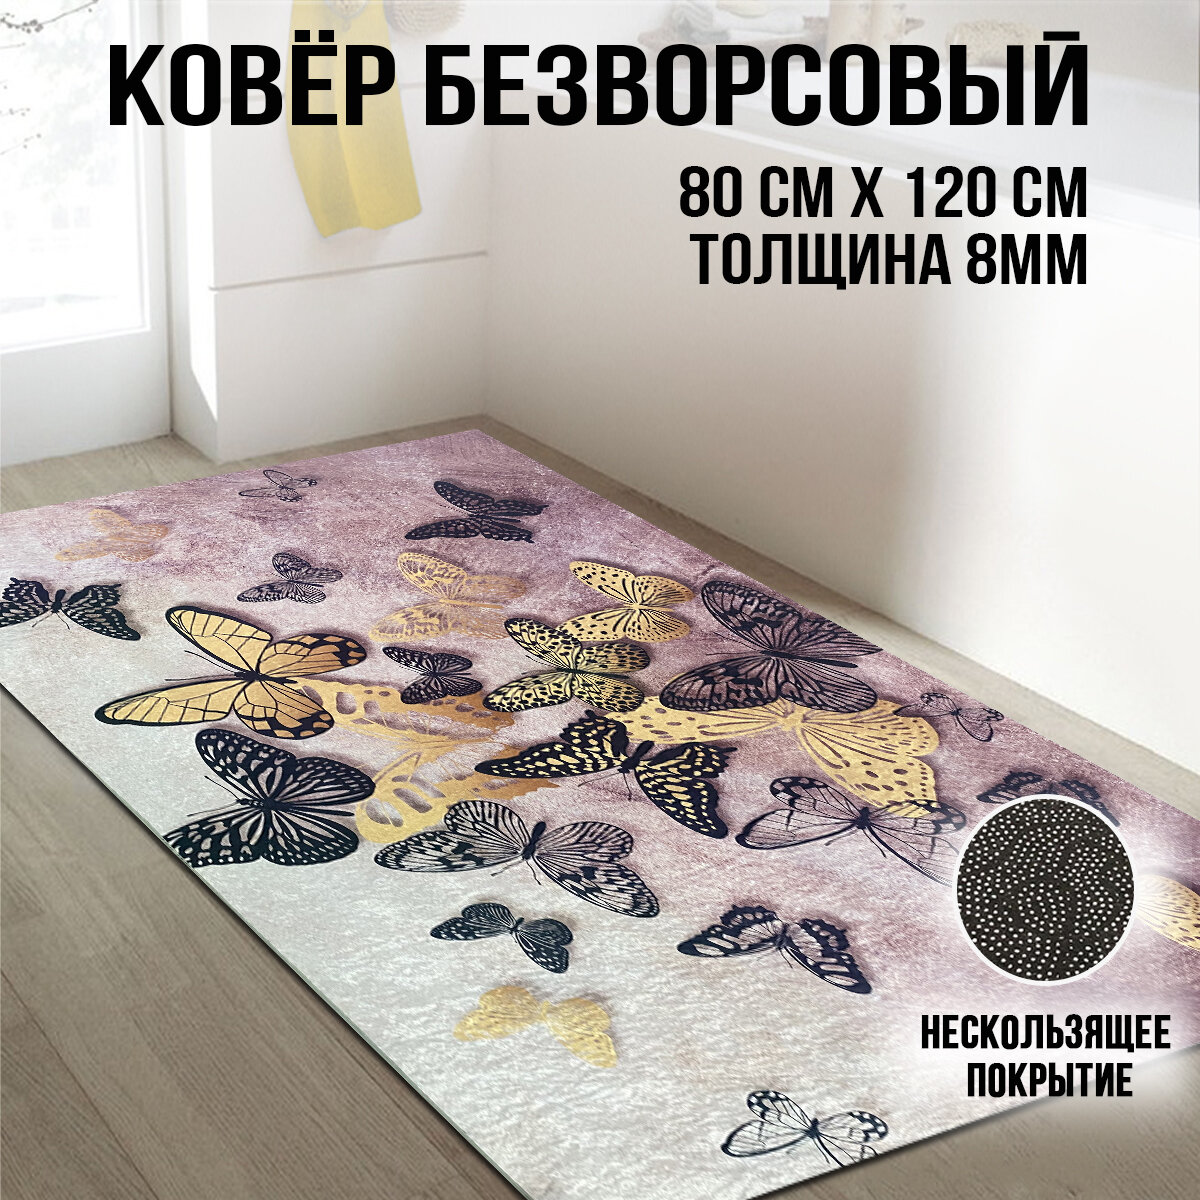 Ковер / коврик комнатный прикроватный для спальни для детской и гостиной на кухню из микрофибры безворсовый 